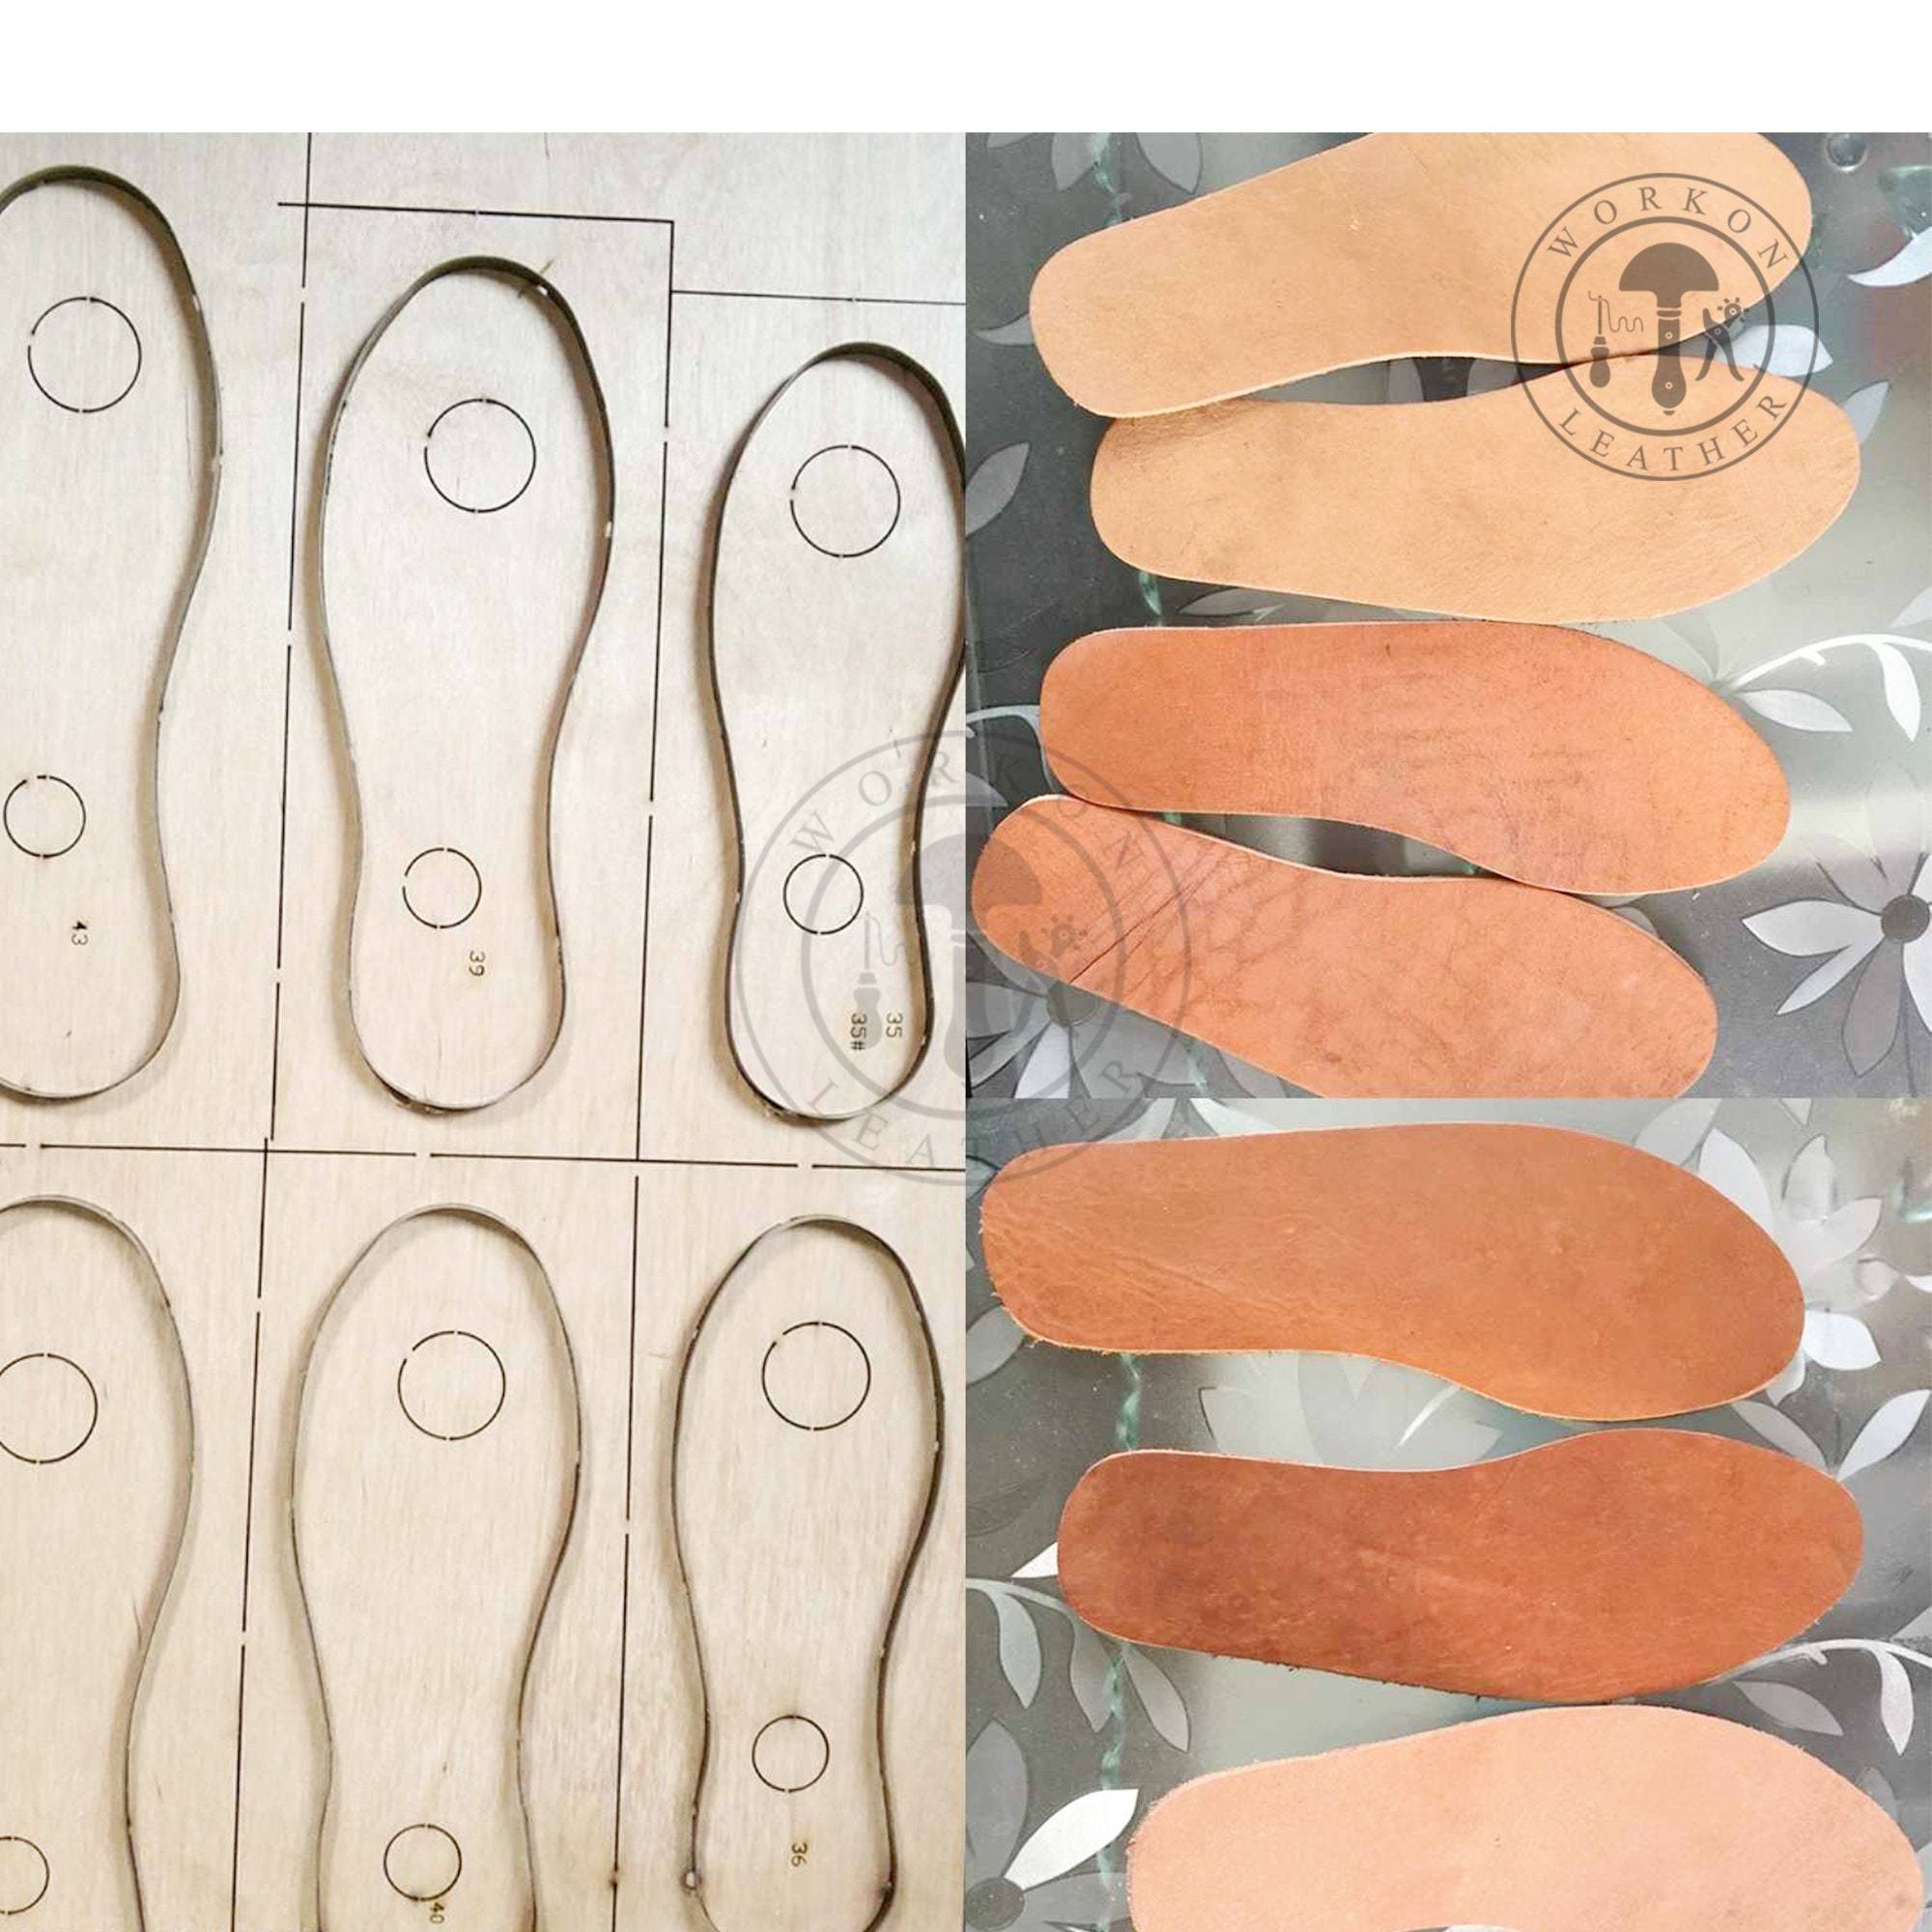 Matrice de découpe en cuir avec lame en acier japonais, outil de découpe  pour le cuir